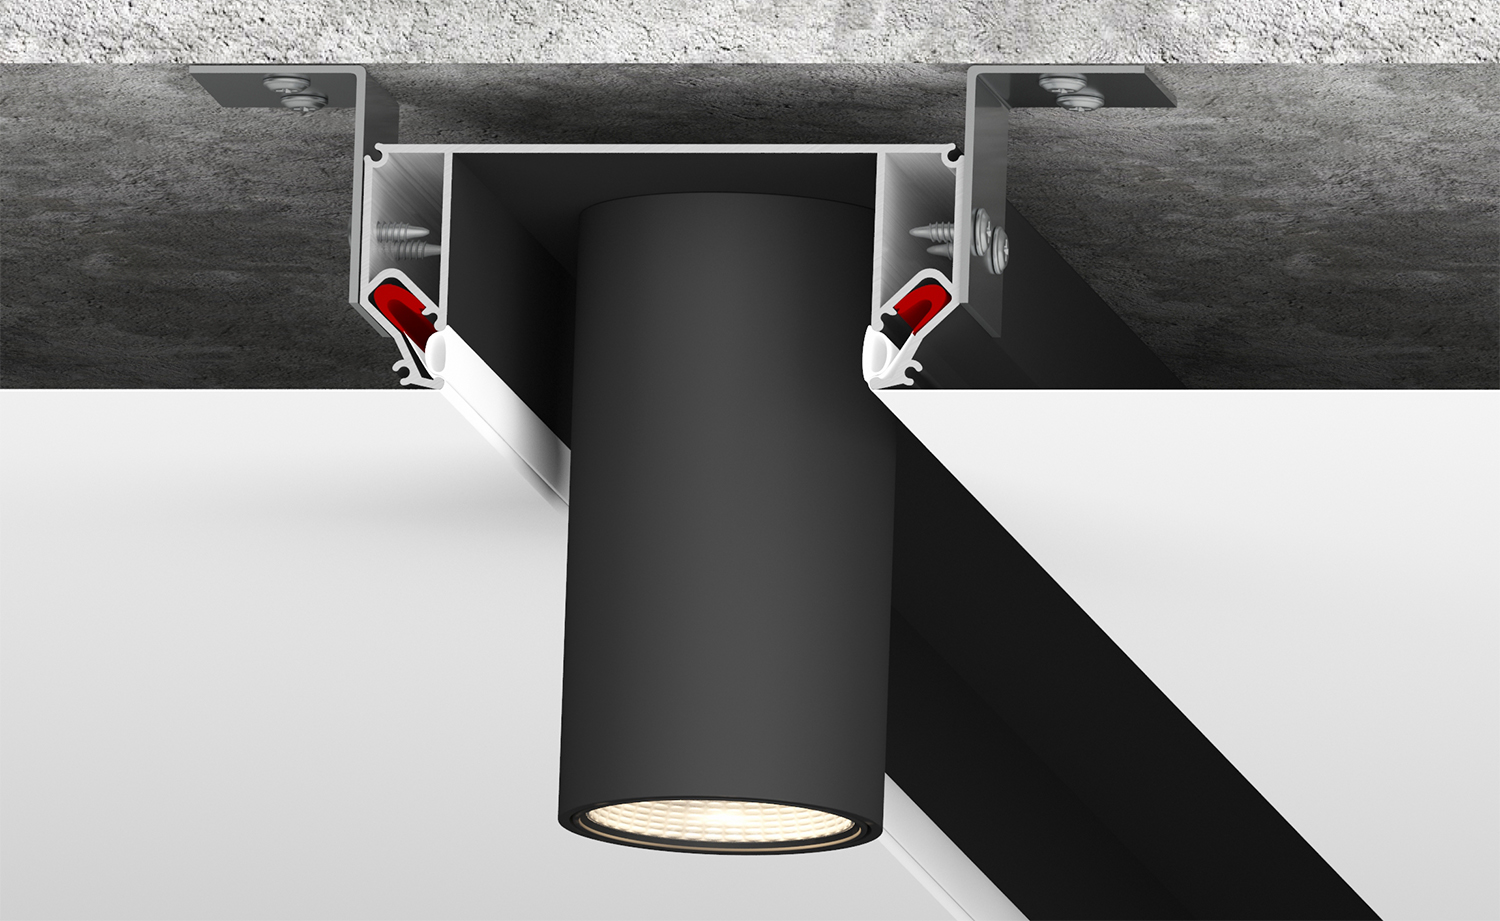 DK5850-BK Профиль Flod для создания декоративных ниш в натяжном потолке, алюминий, черный